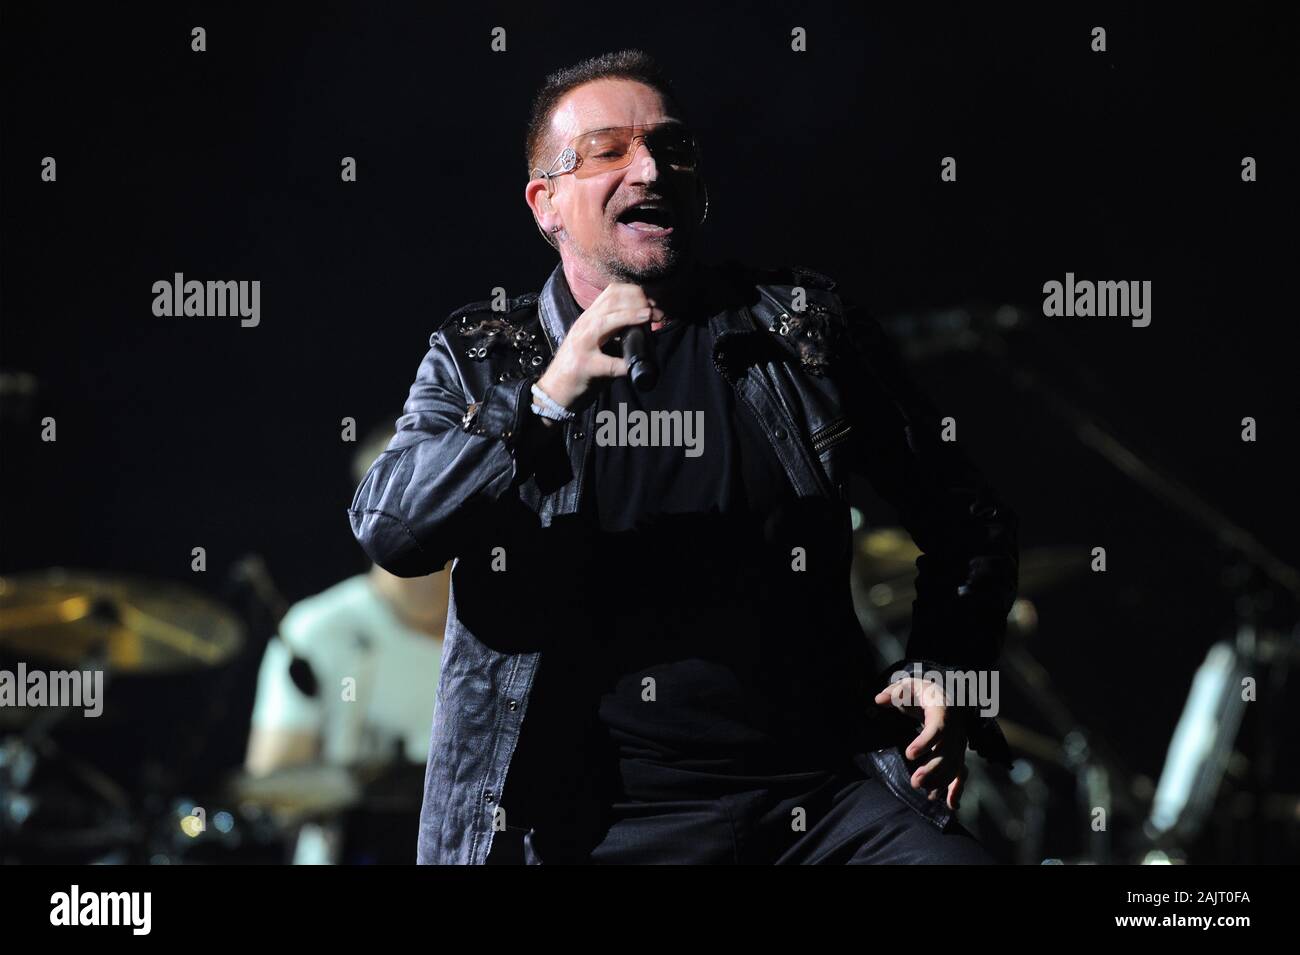 Ali Hewson And Bono Of U2 Immagini E Fotos Stock Alamy